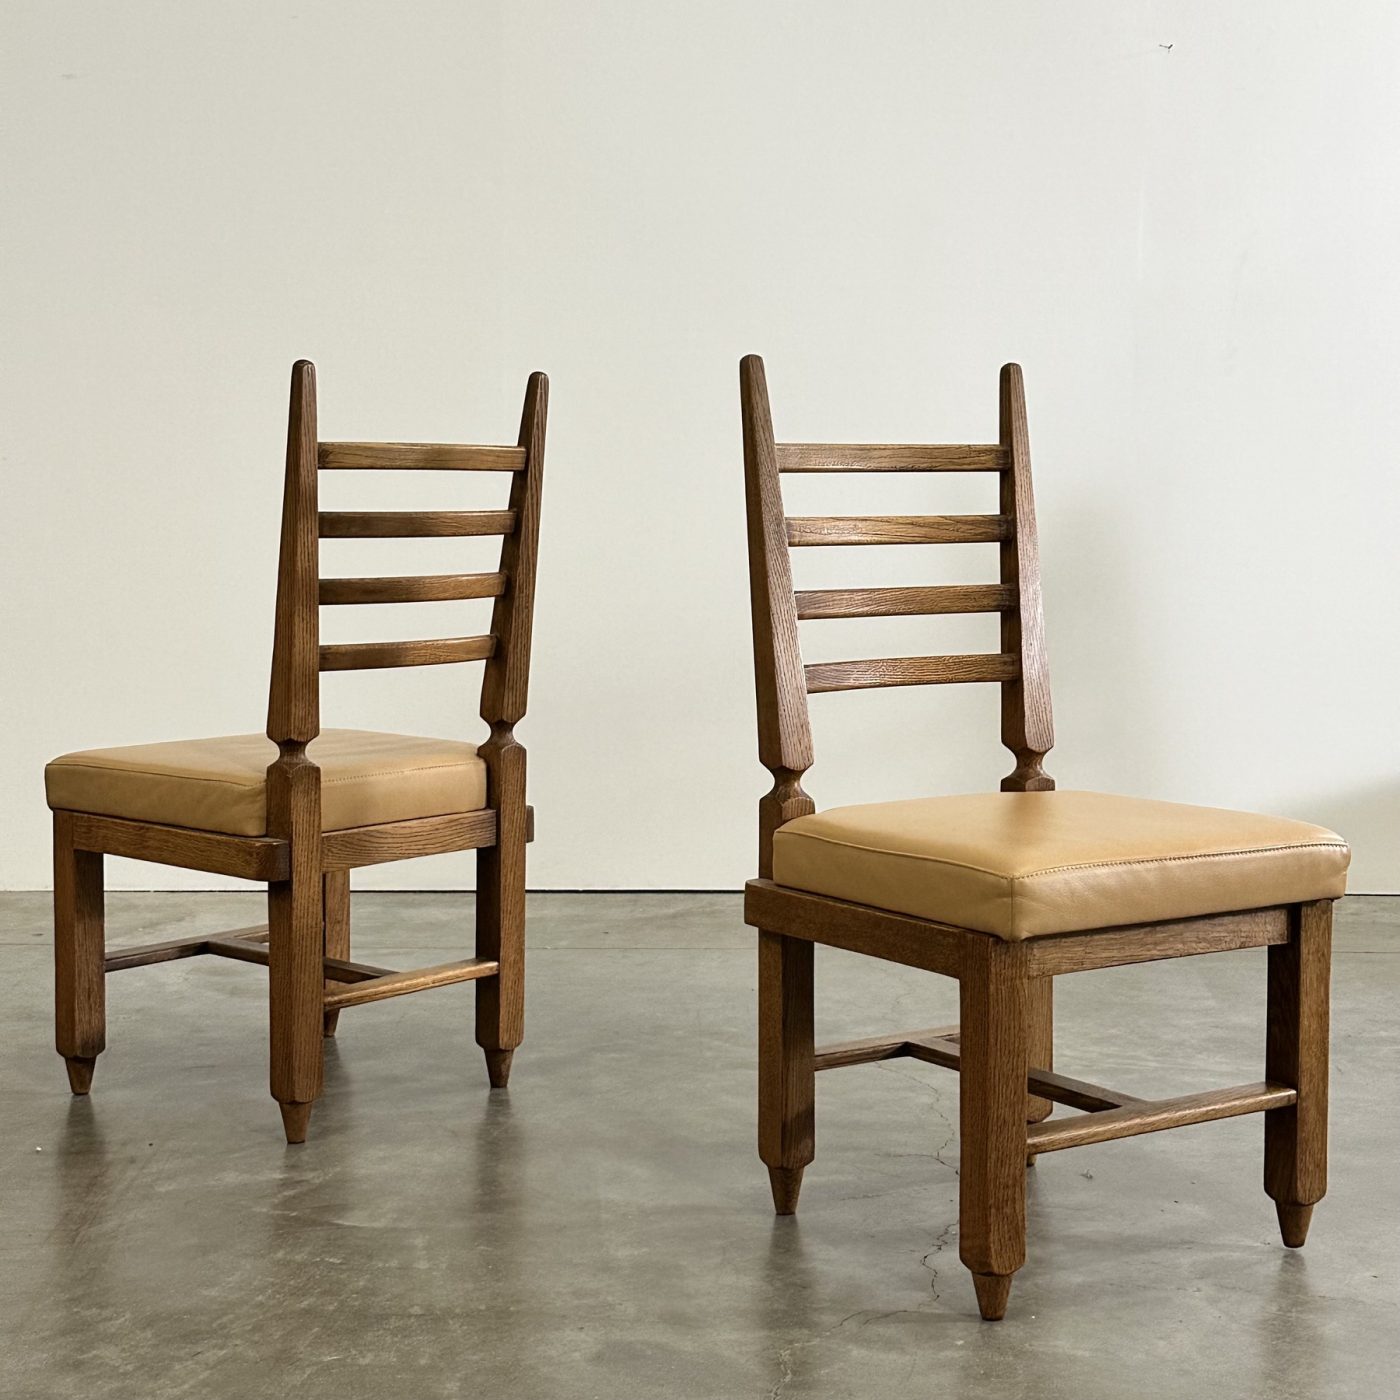 objet-vagabond-guillerme-chairs0009